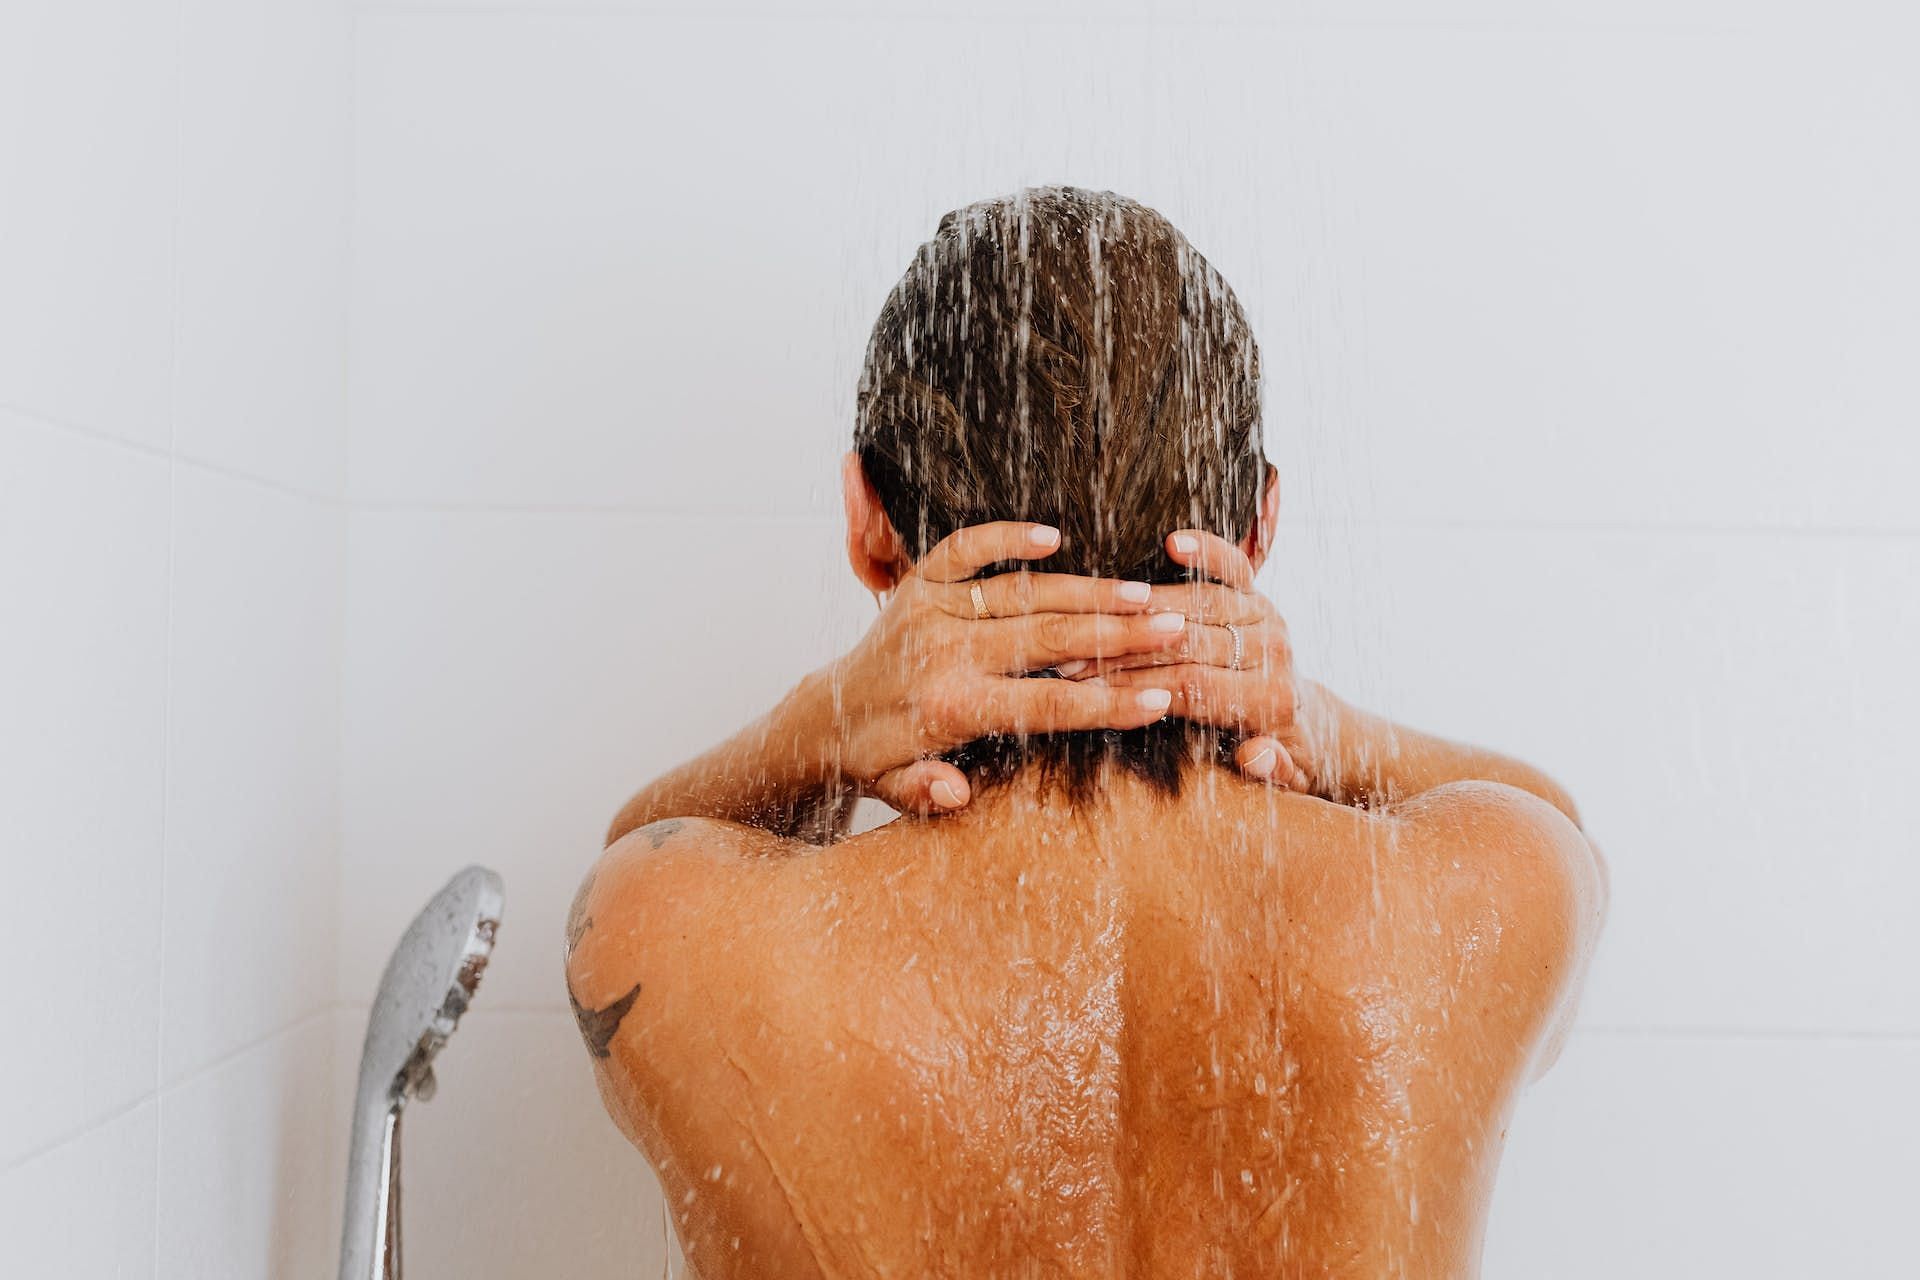 A good shower relaxes muscle soreness (Image via Pexels/Karolina Grabowska)